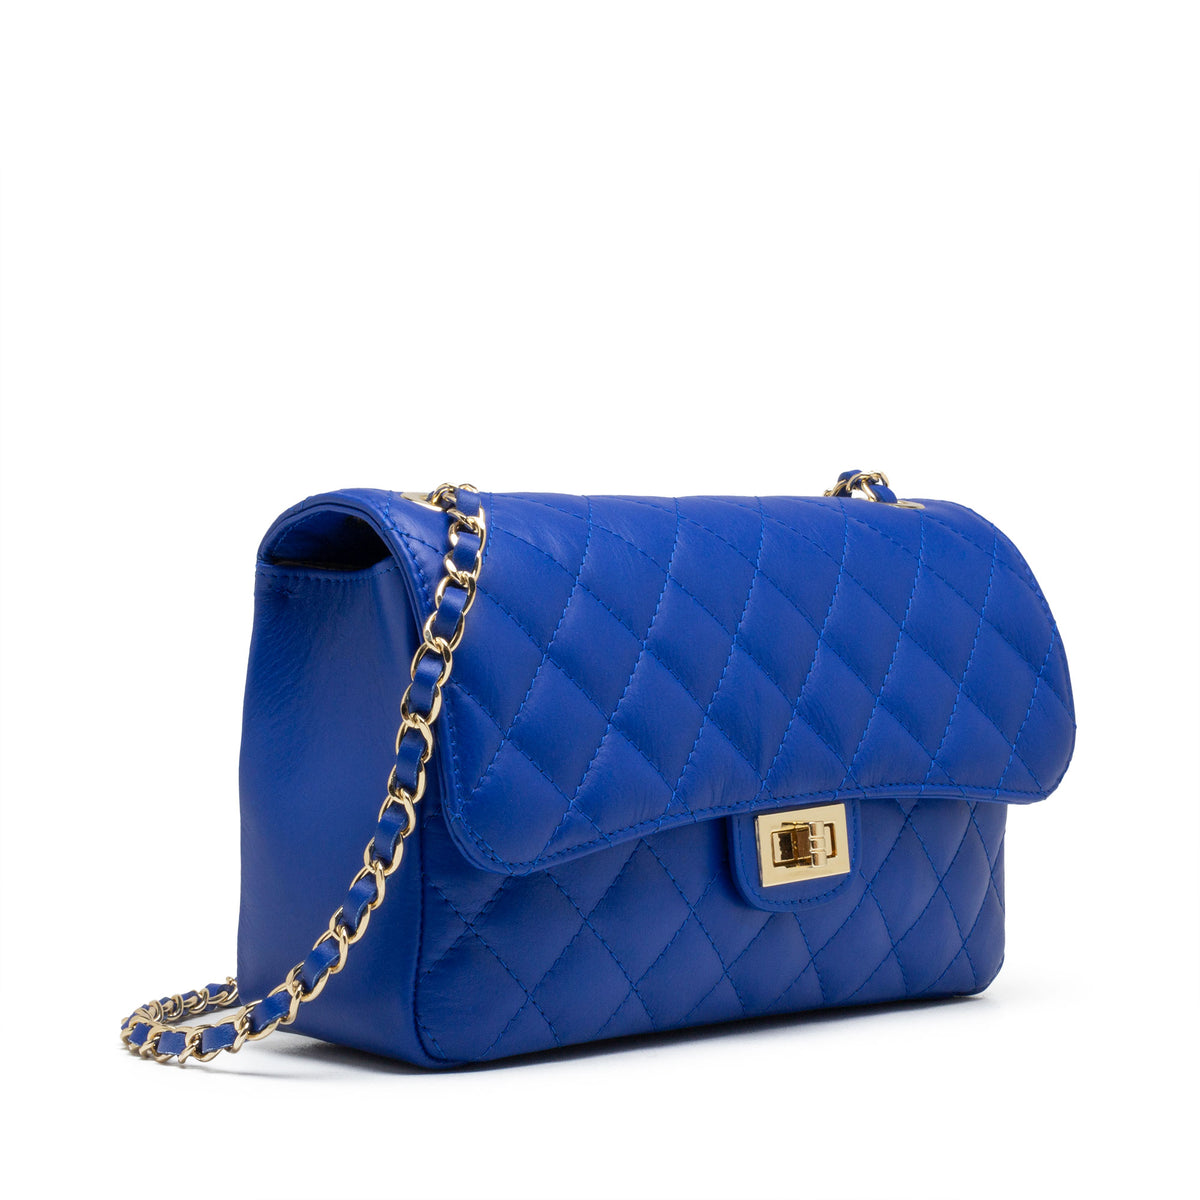 Alyssa Light Blue Tassel Ring Crossbody Bag, Best Price and Reviews